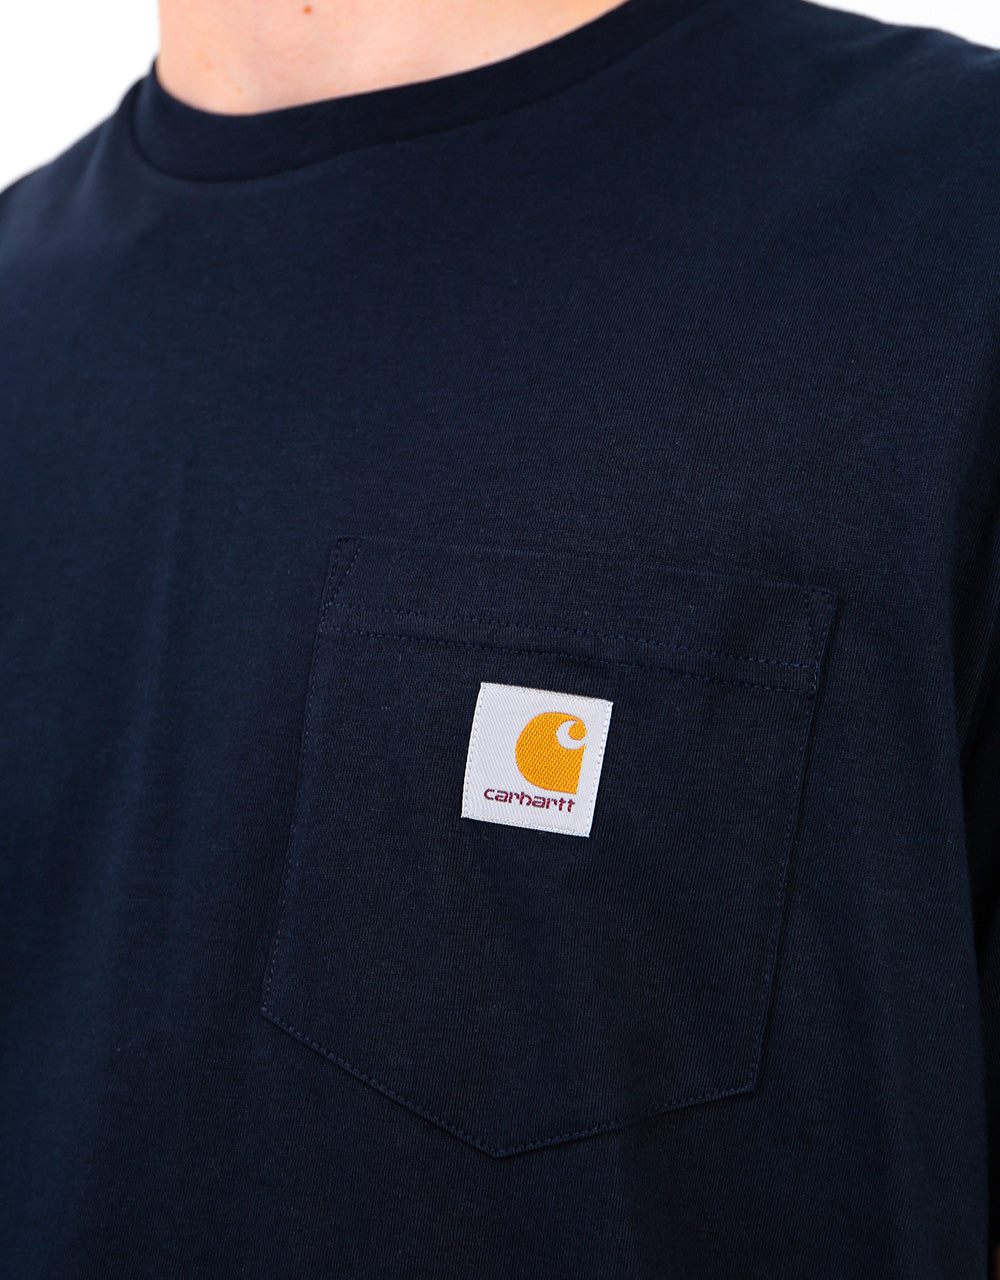 Carhartt WIP S/S Pocket T-Shirt - Dark Navy